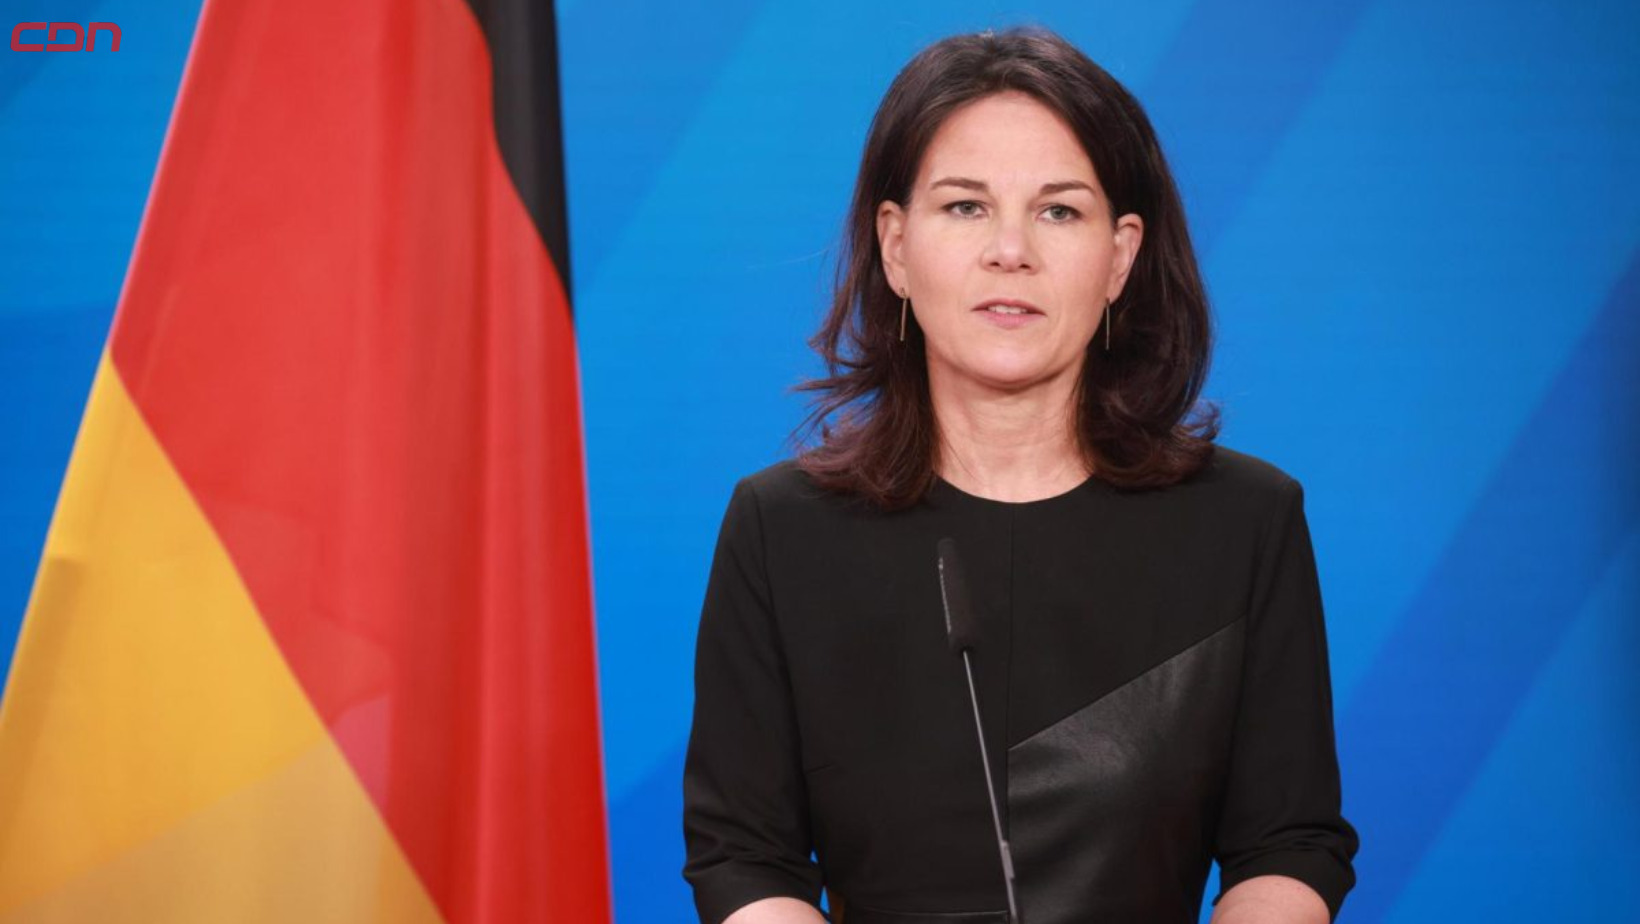 La ministra de Asuntos Exteriores de Alemania, Annalena Baerbock. Foto: Fuente externa